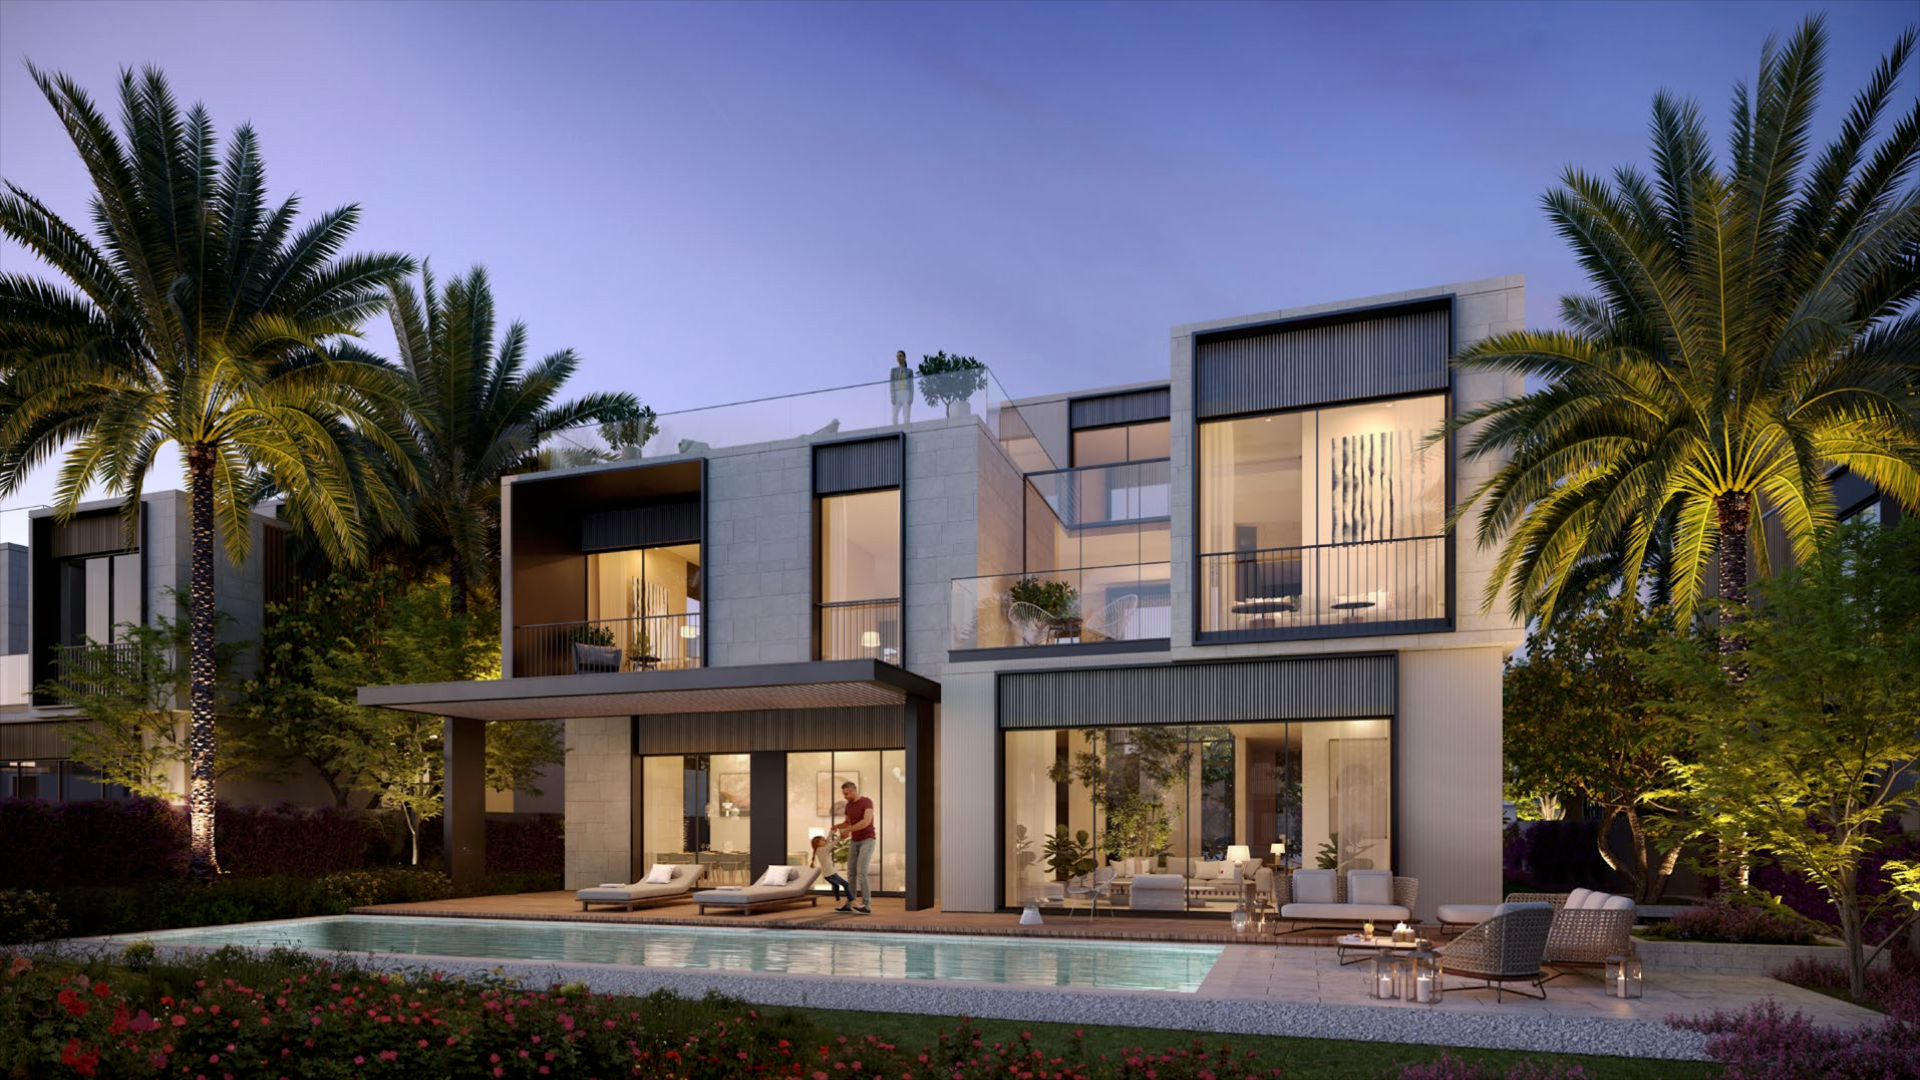  Bedroom Villa For Sale Palm Hills Lp07077 9fa8c6a3cda1080.png